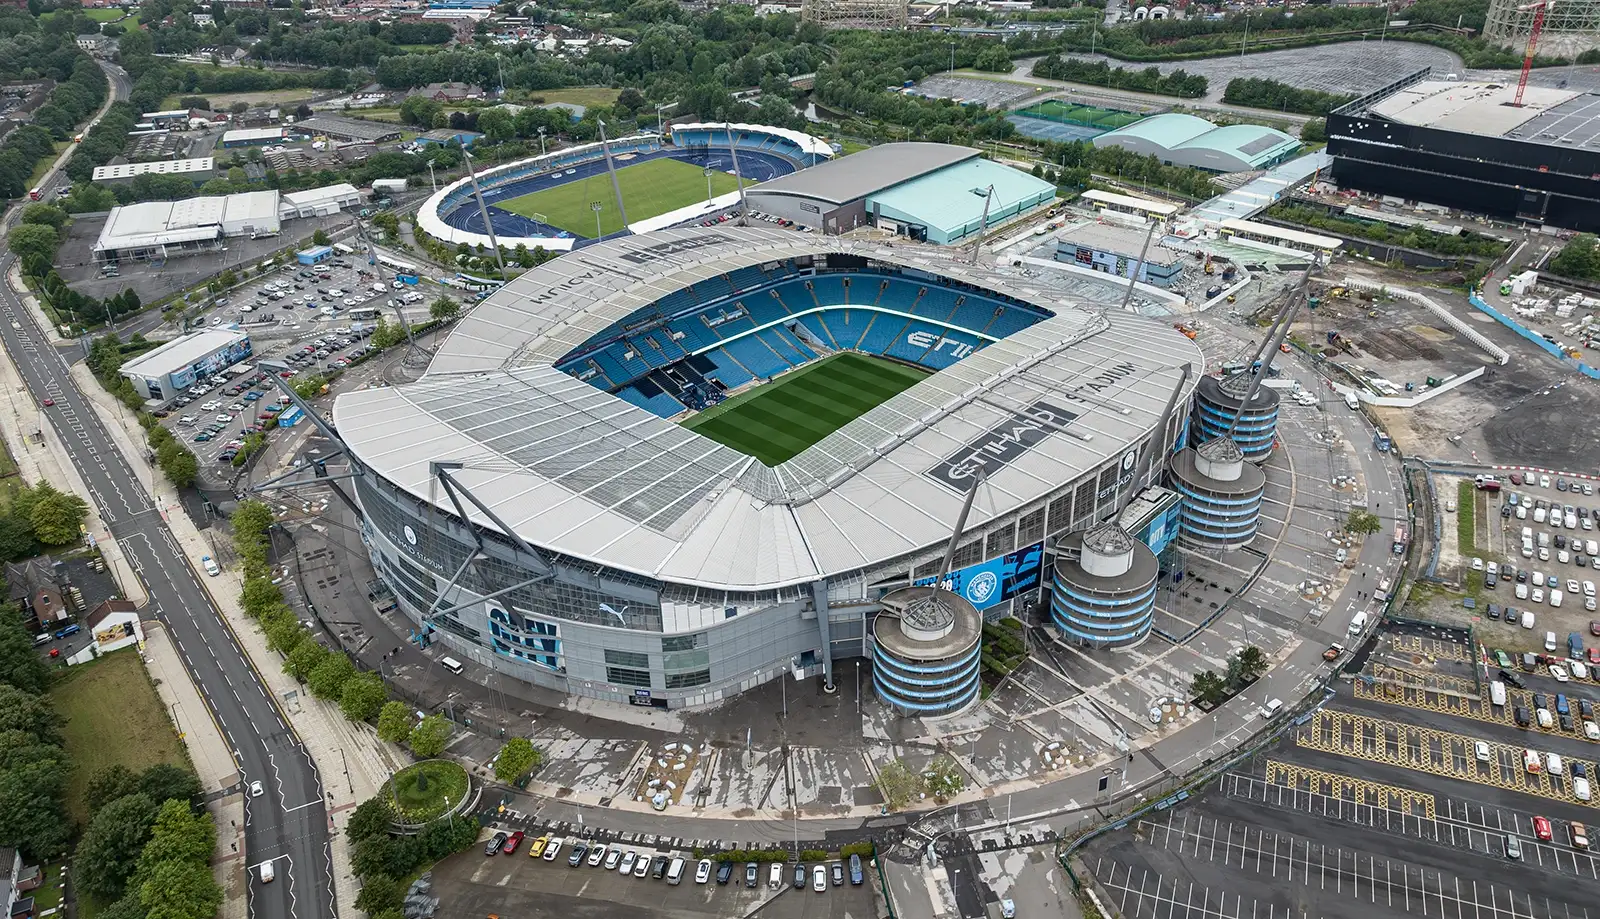 Thành phố Manchester - "Thánh địa của bóng đá"